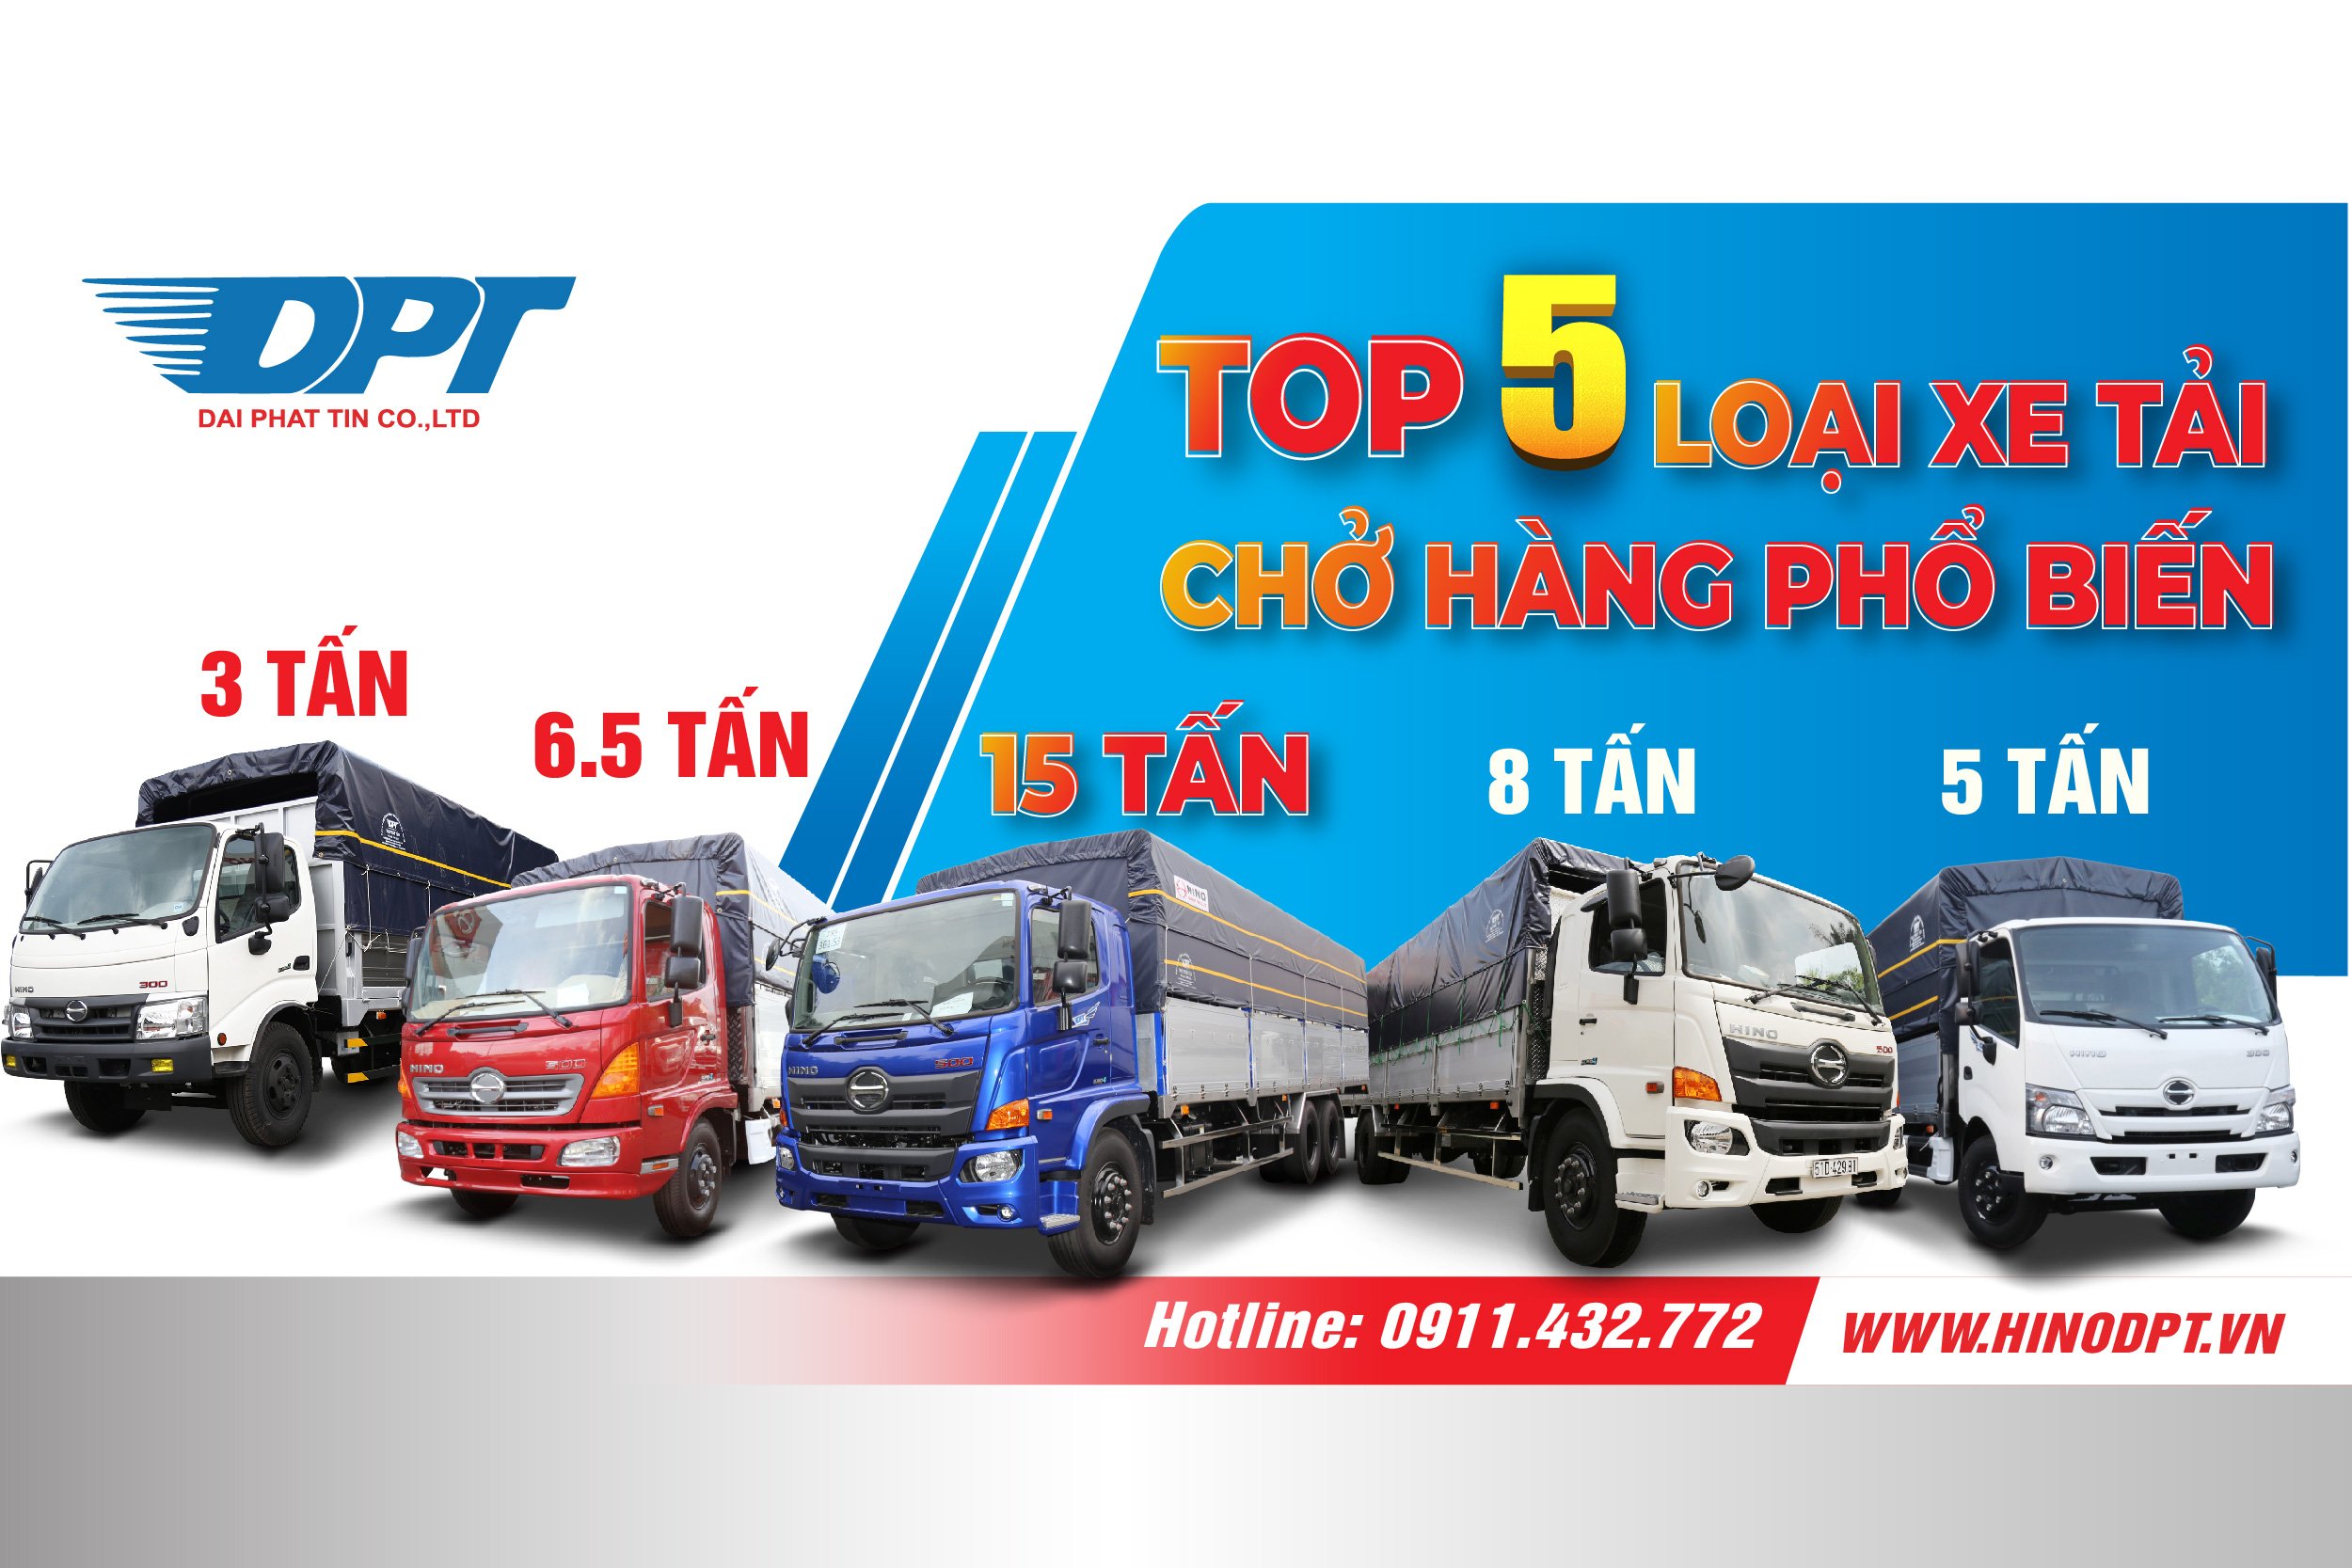 Top 5 loại xe tải chở hàng phổ biến